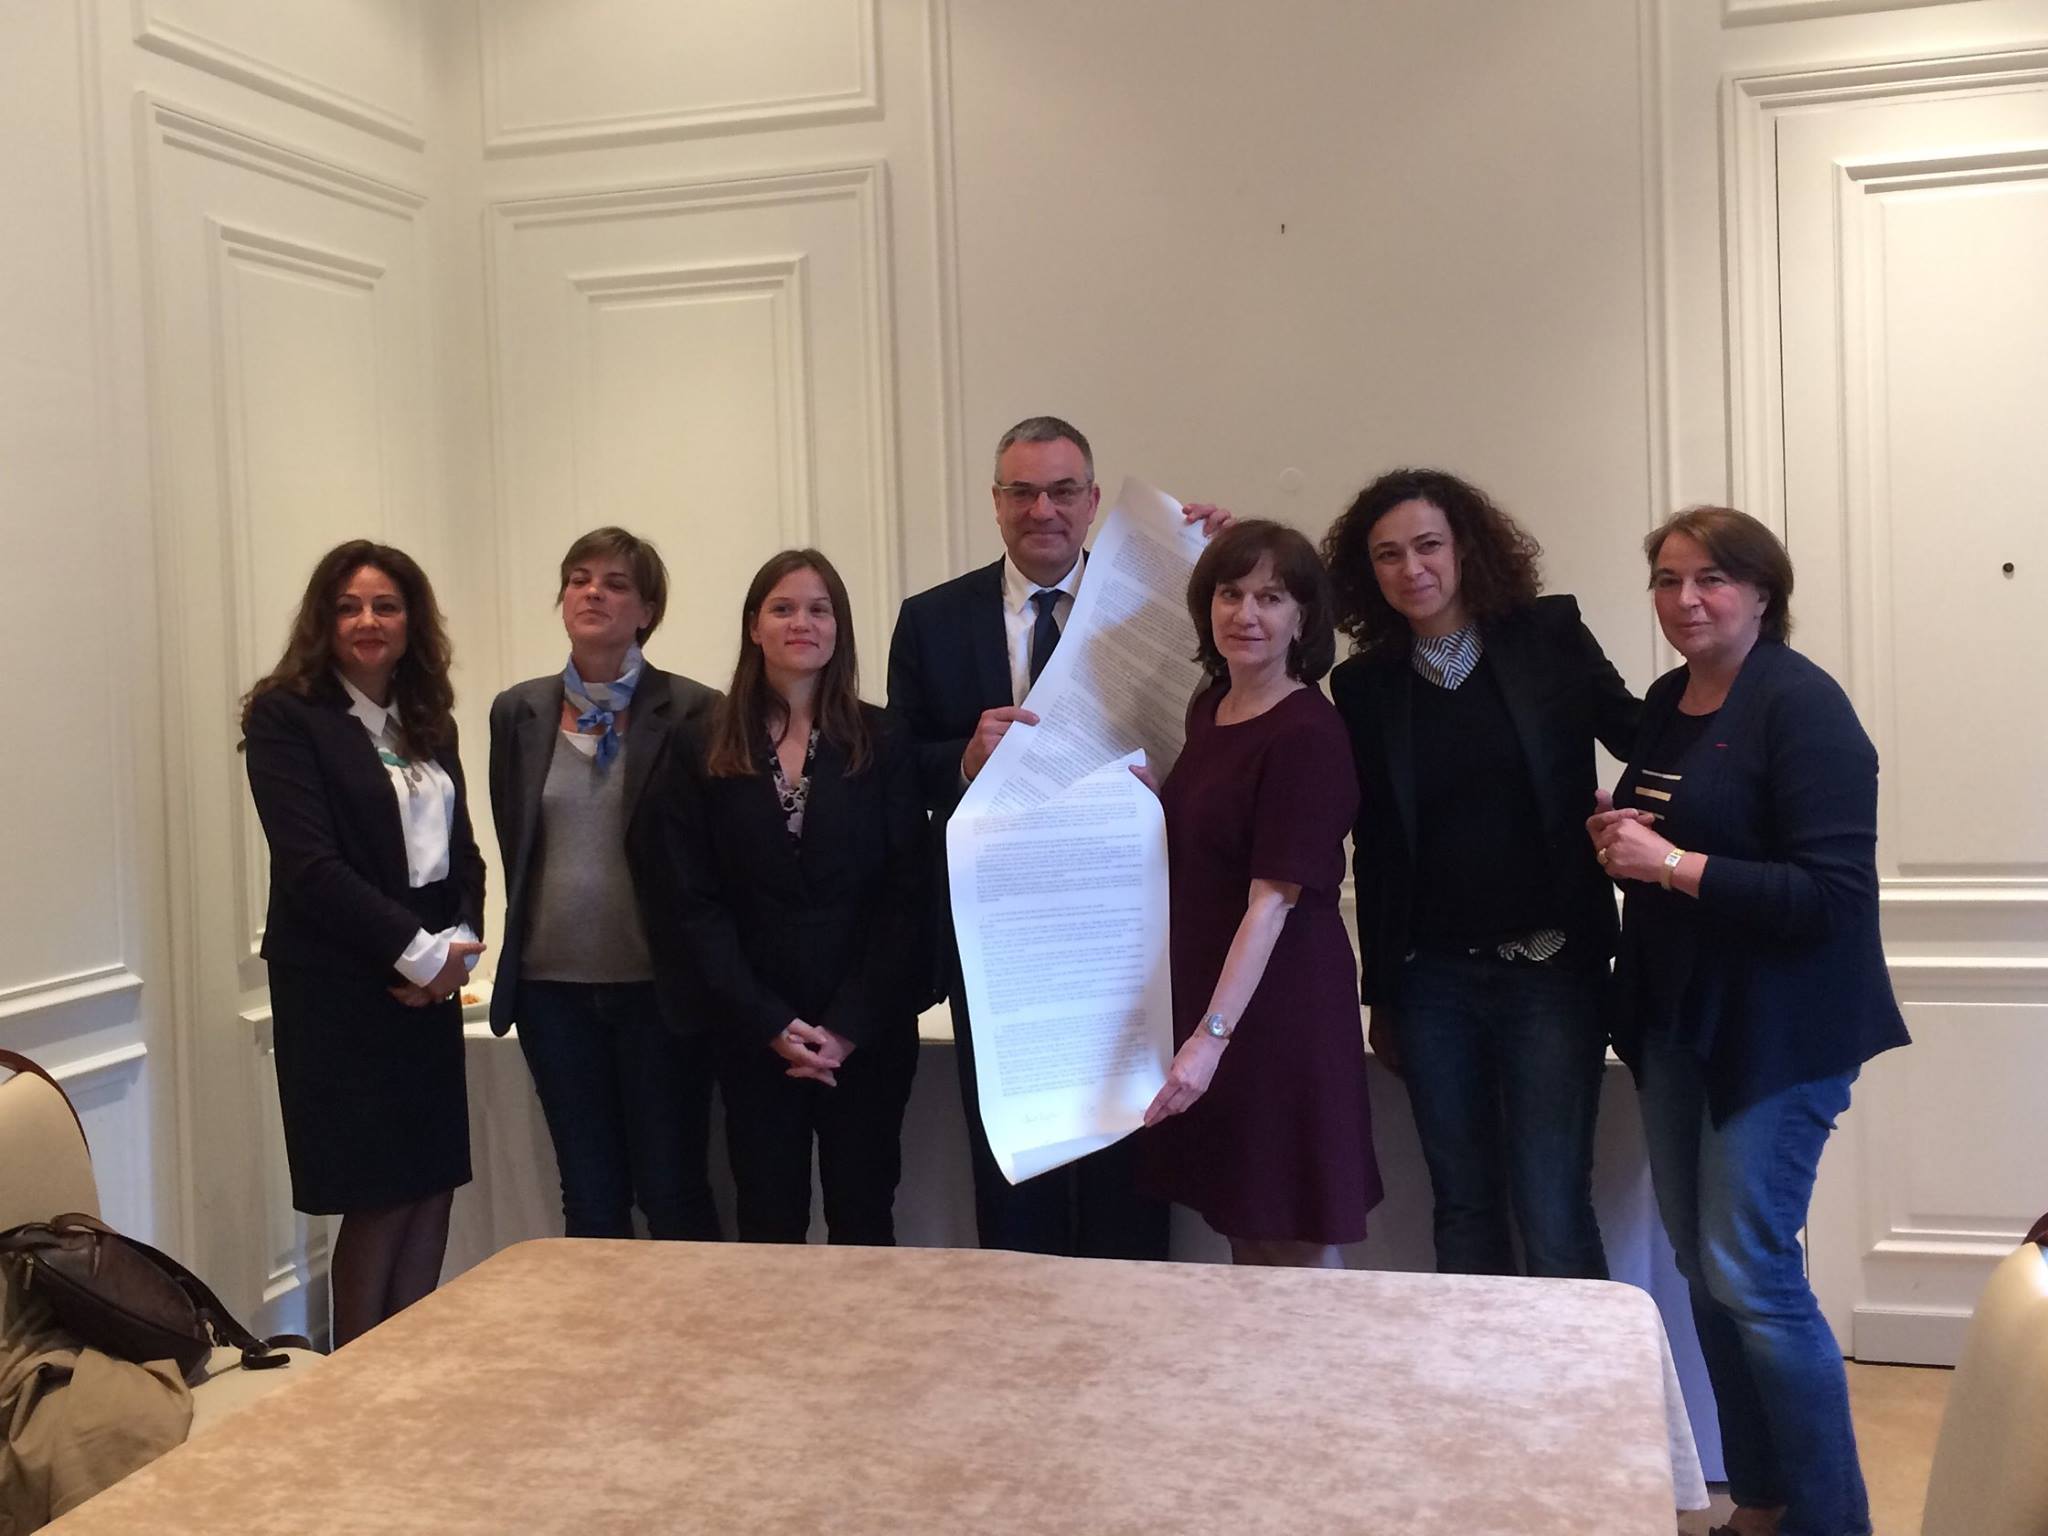 Lors de la journée du 22 mars 2016 à la Mairie de Paris, neuf femmes ont rédigé ensemble un manifeste pour la Paix.